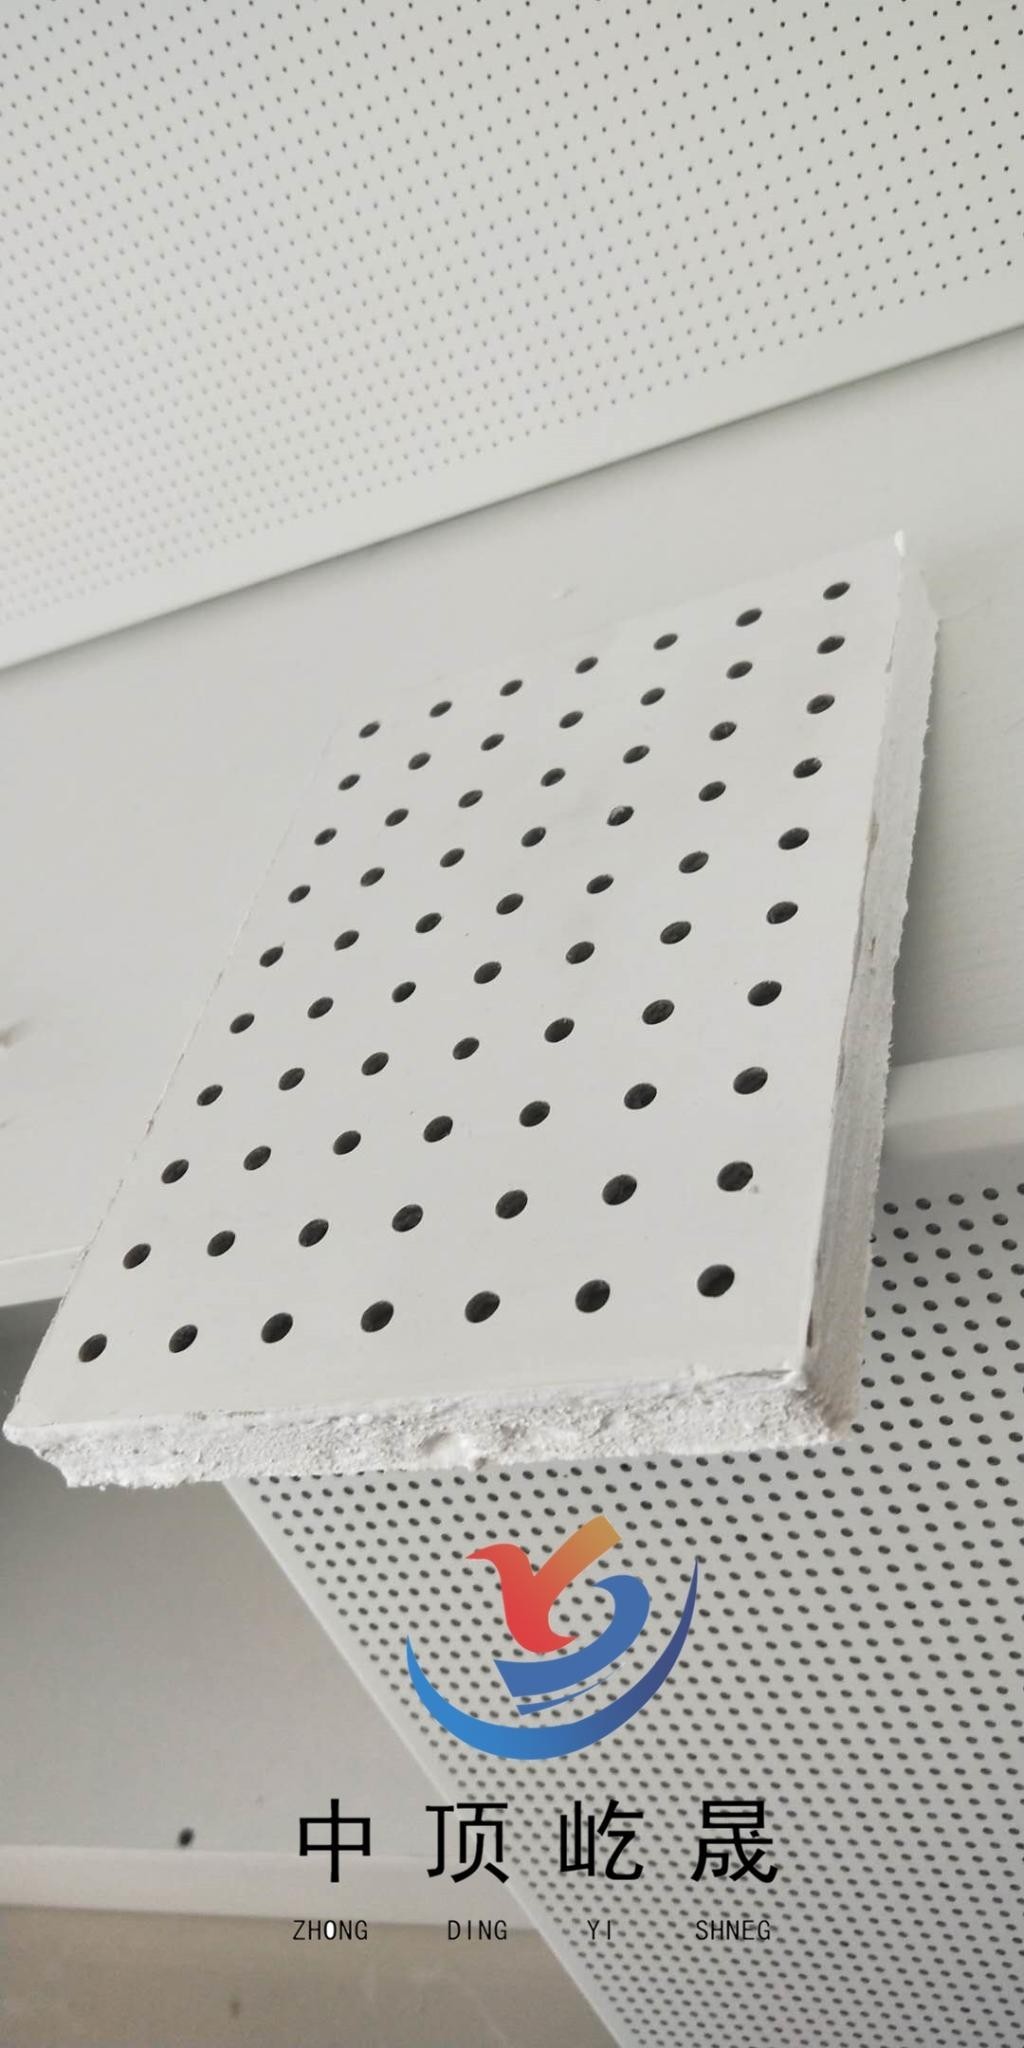 硅酸钙板作为新型环保建材,除具有传统石膏板和矿棉板的功能外,更具有